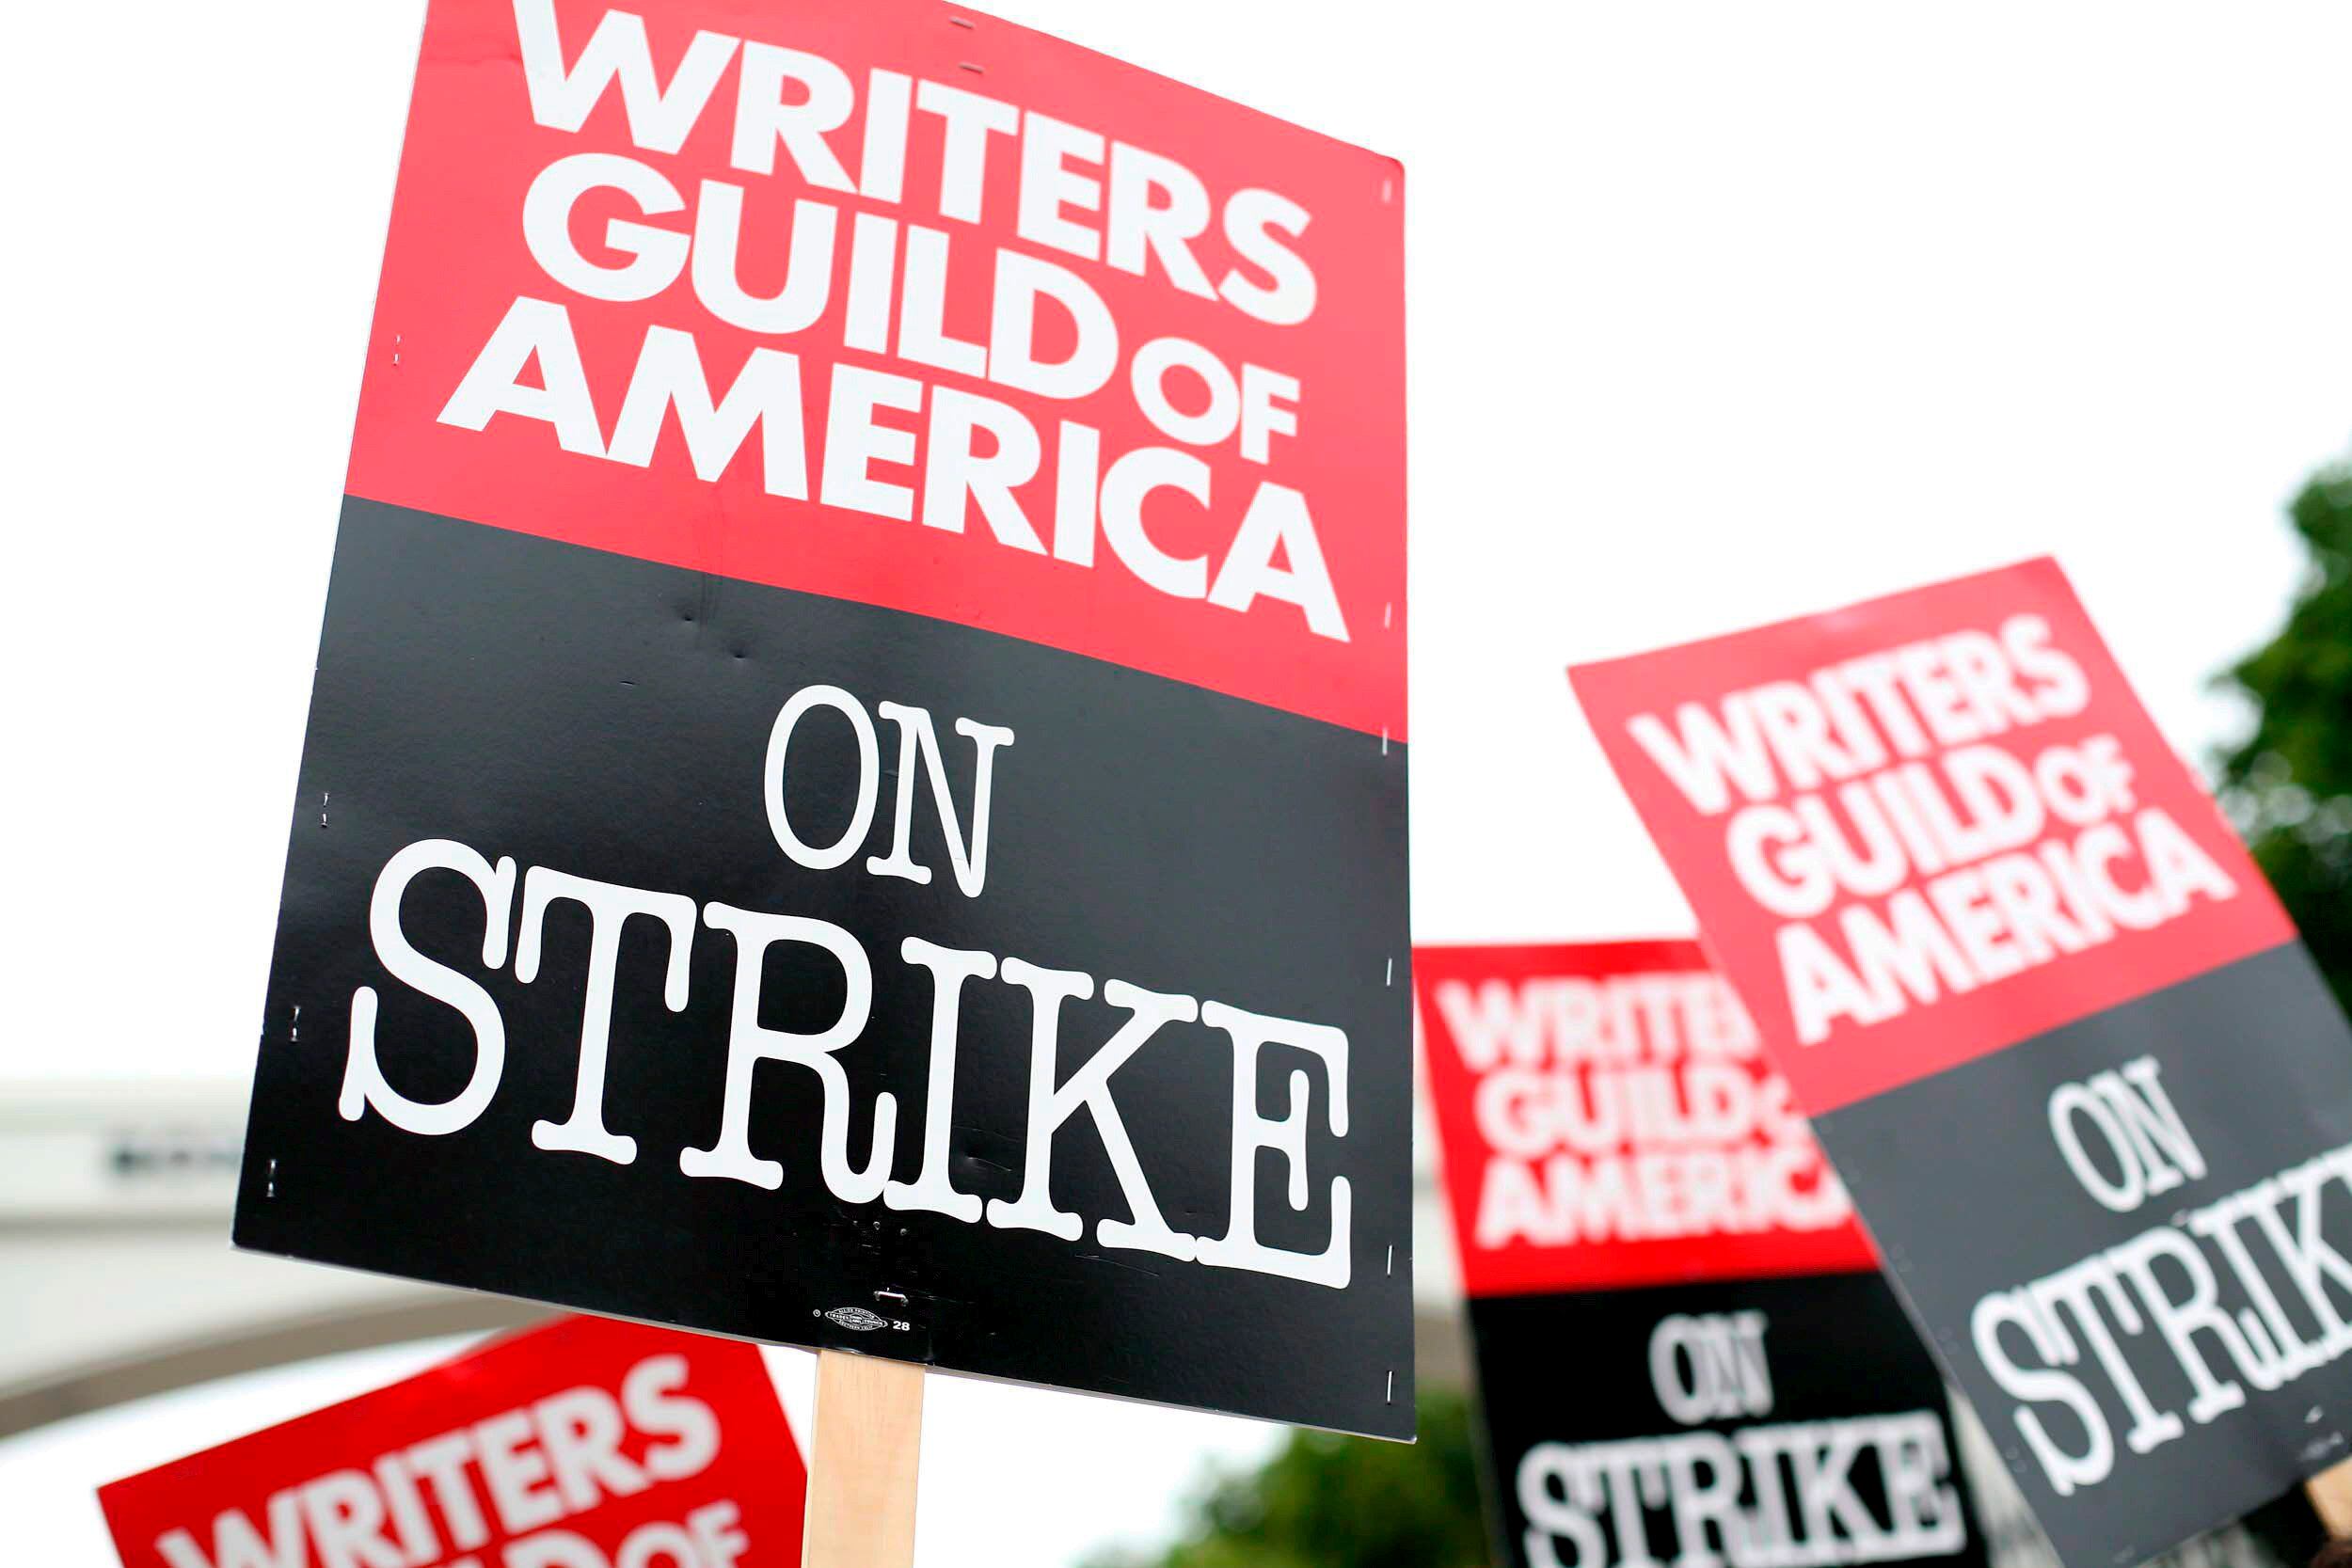 Dos estudiantes fueron expulsados de los estudios CBS por mostrar su apoyo a la huelga de guionistas (EFE/Sean Masterson)